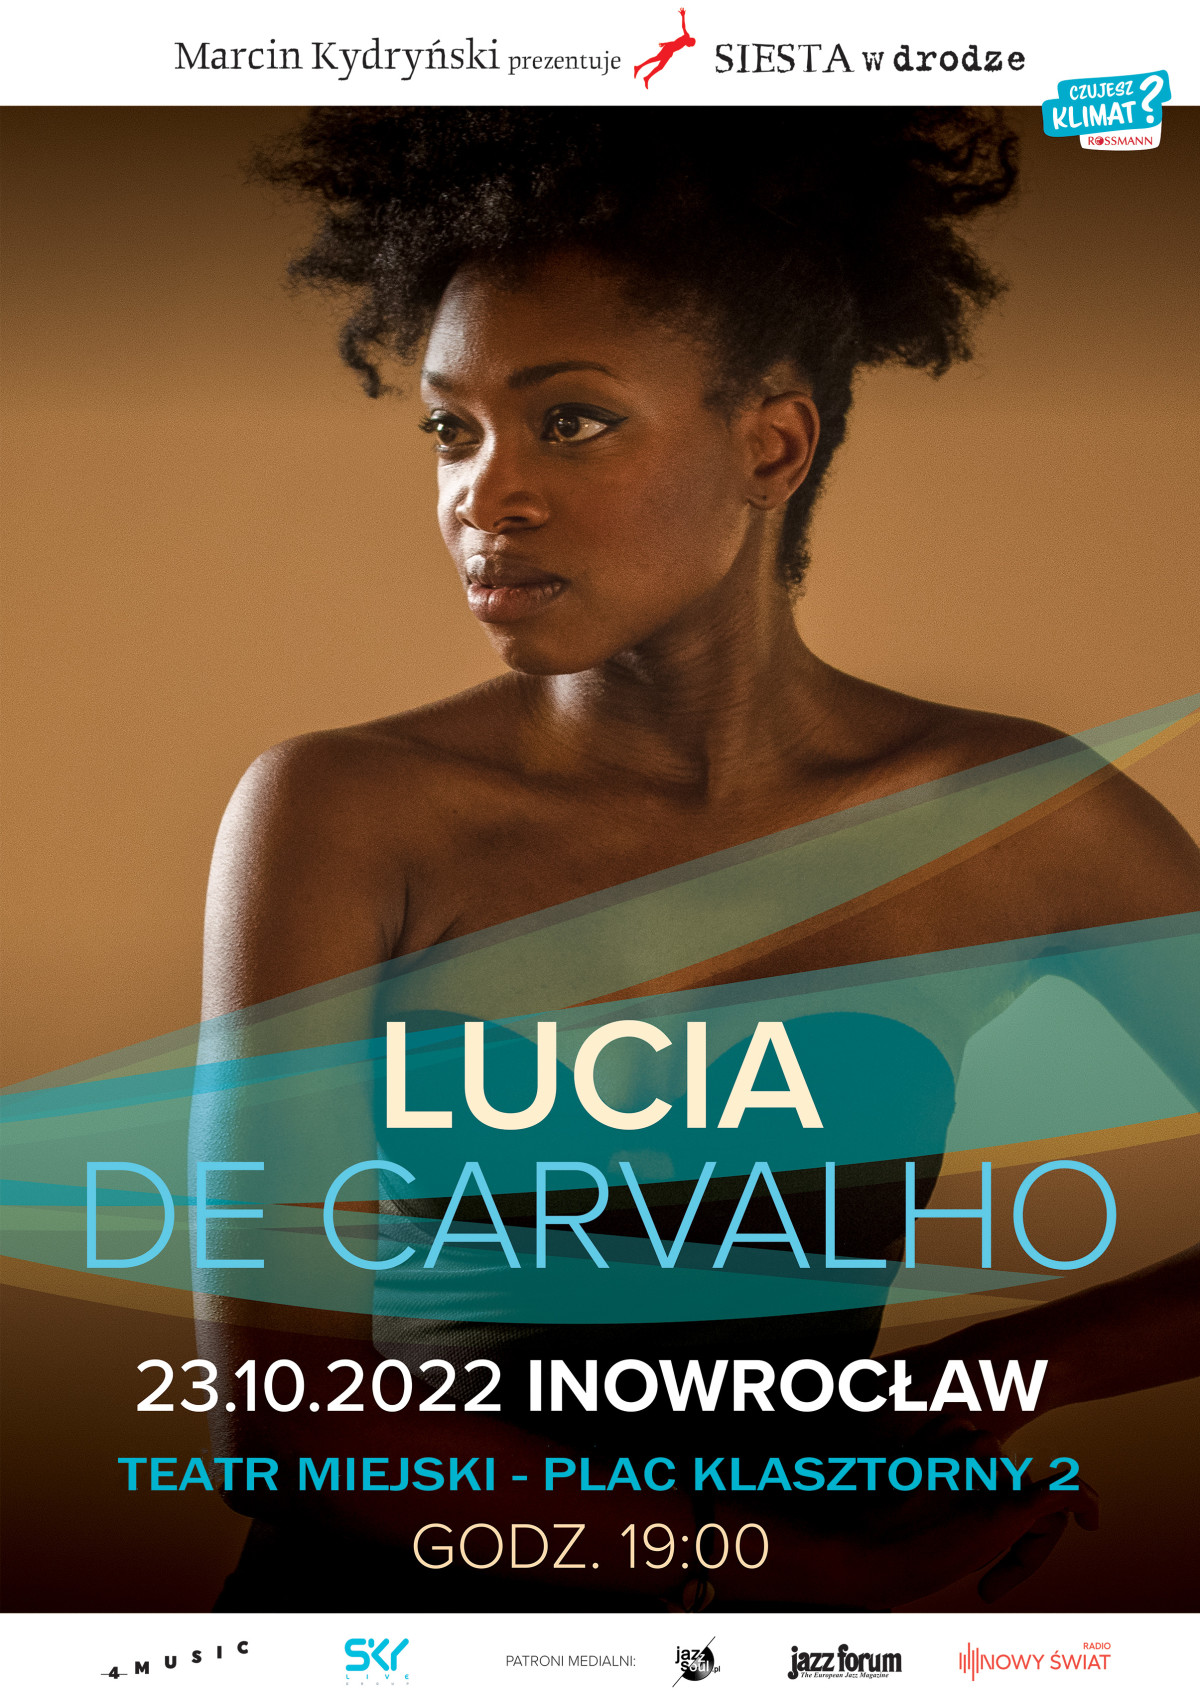 Lucia de Carvalho plakat